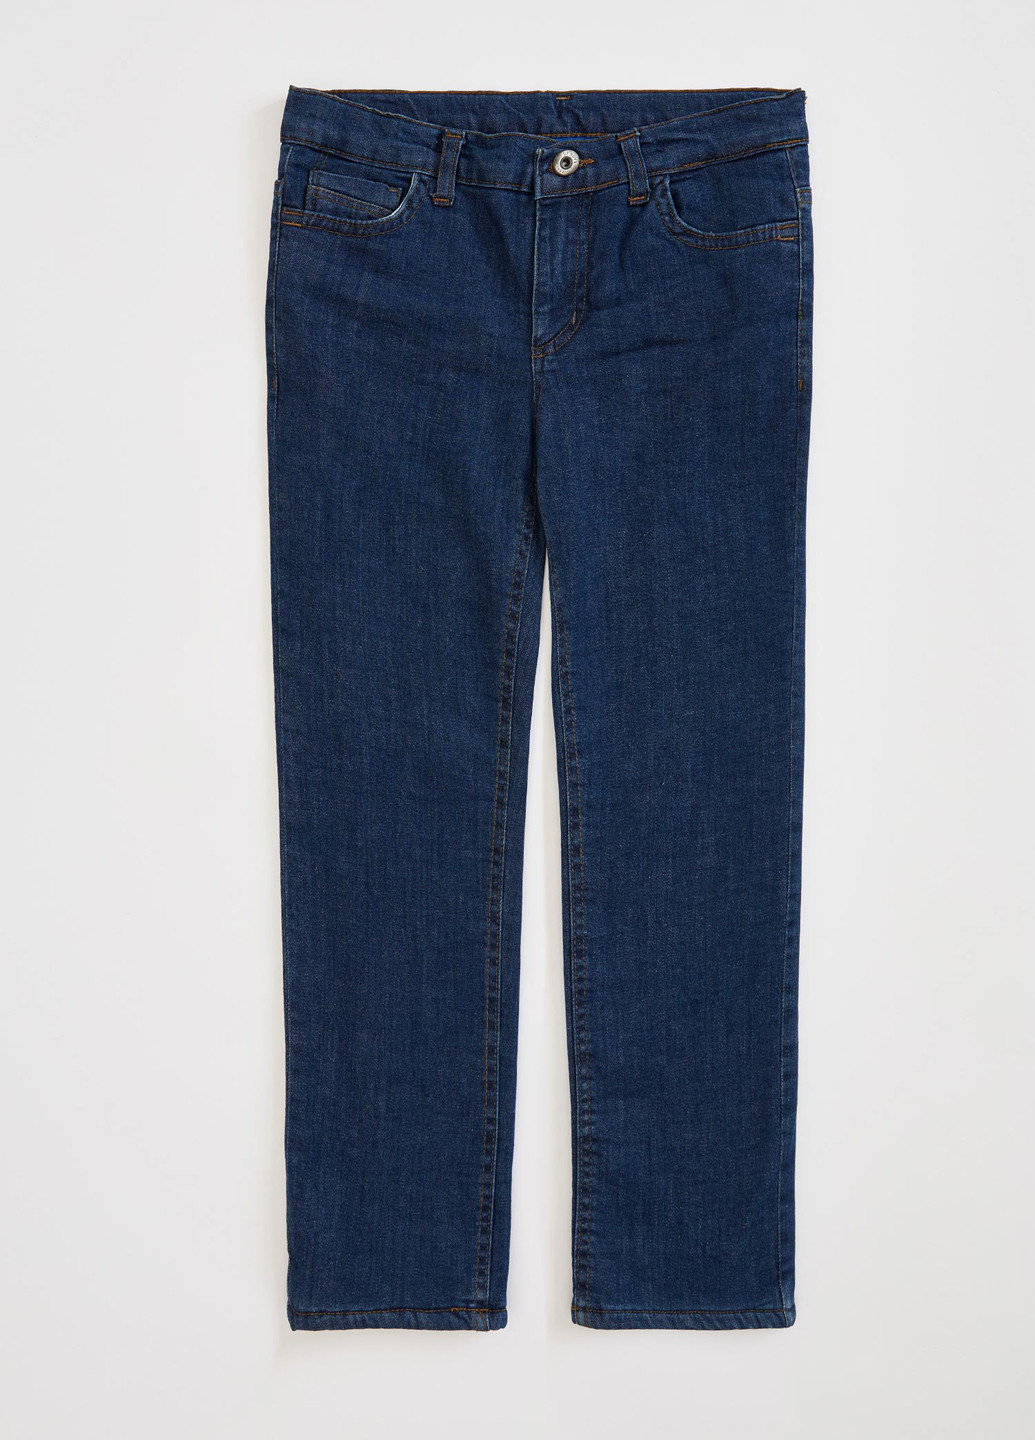 Темно-синие джинсовые демисезонные брюки прямые DeFacto